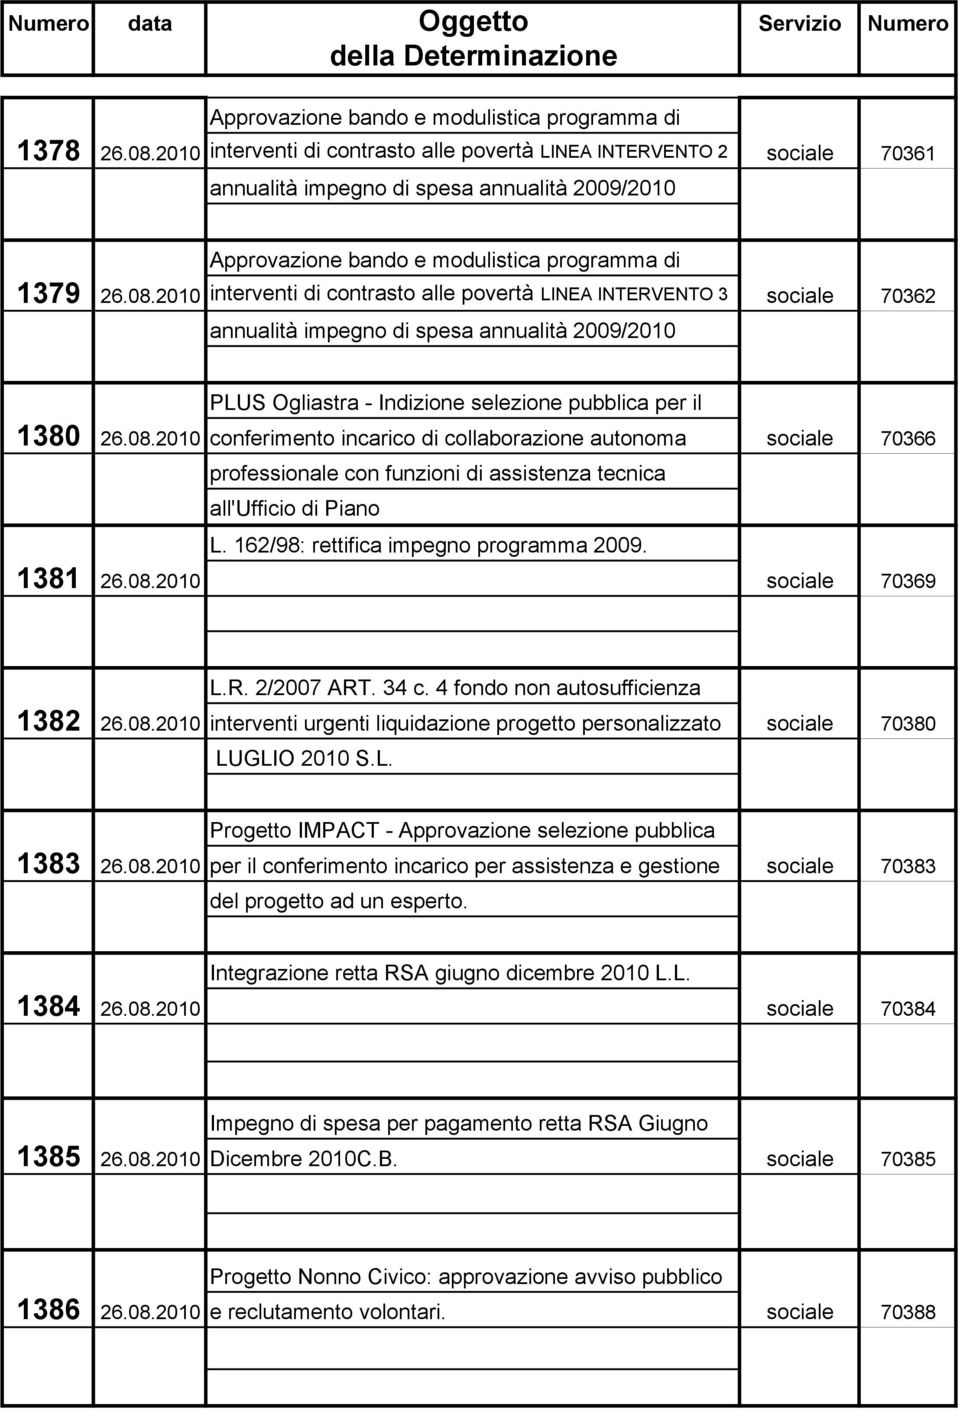 2010 interventi di contrasto alle povertà LINEA INTERVENTO 3 sociale 70362 annualità impegno di spesa annualità 2009/2010 PLUS Ogliastra - Indizione selezione pubblica per il 1380 26.08.